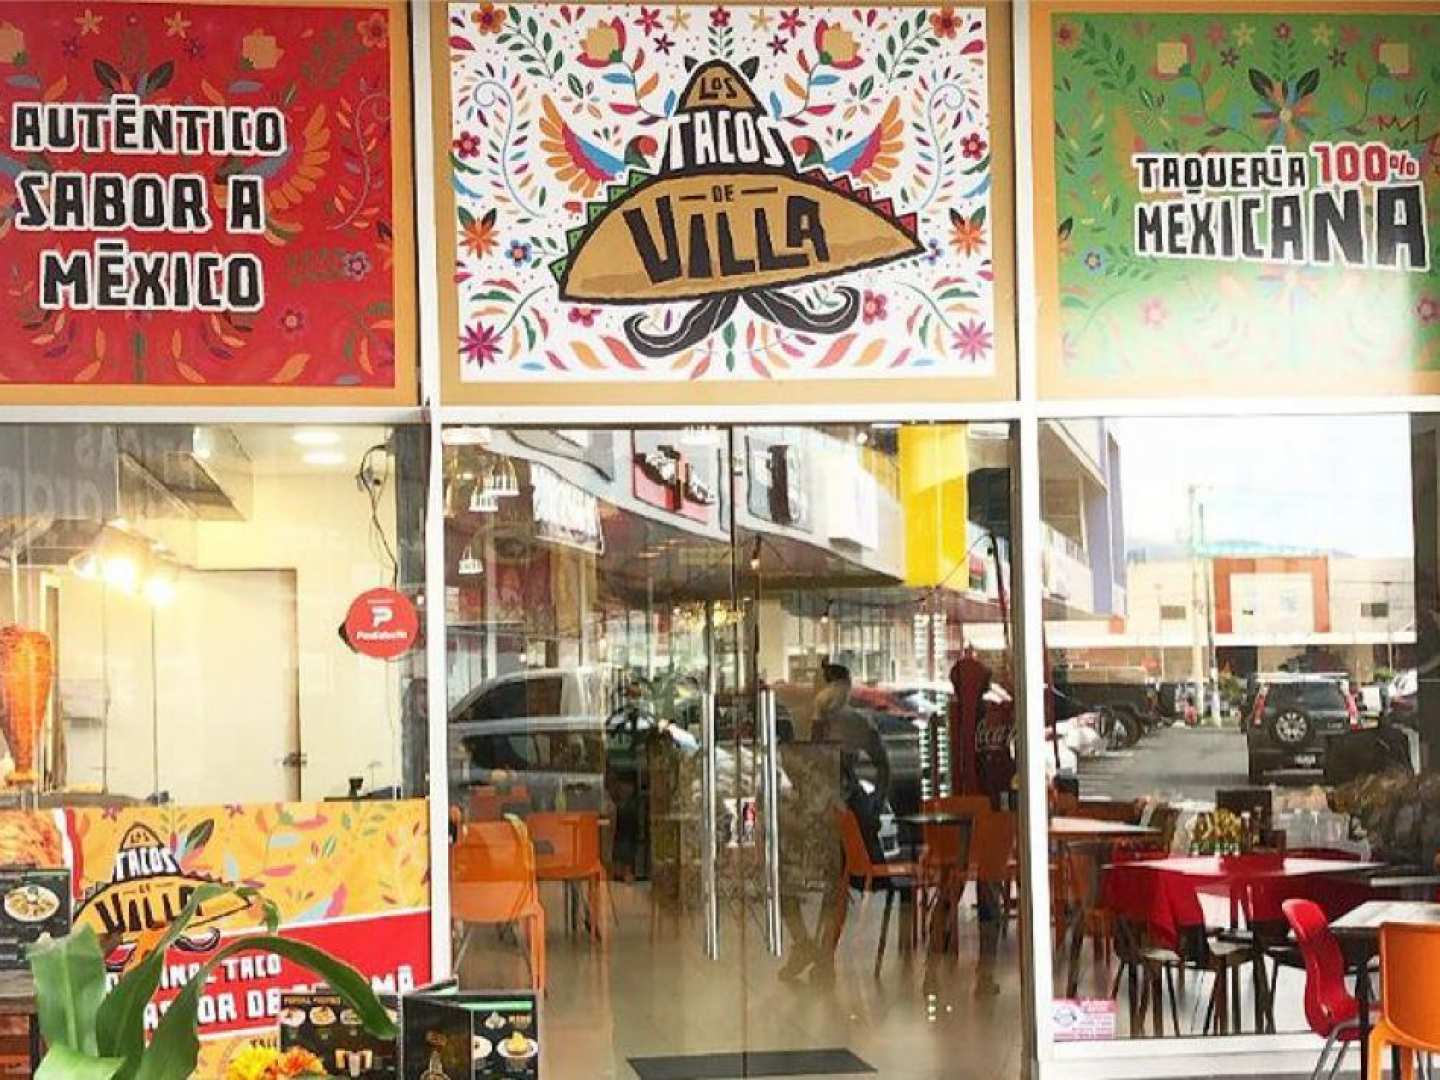 Los Tacos de Villa (Brisas del Golf)